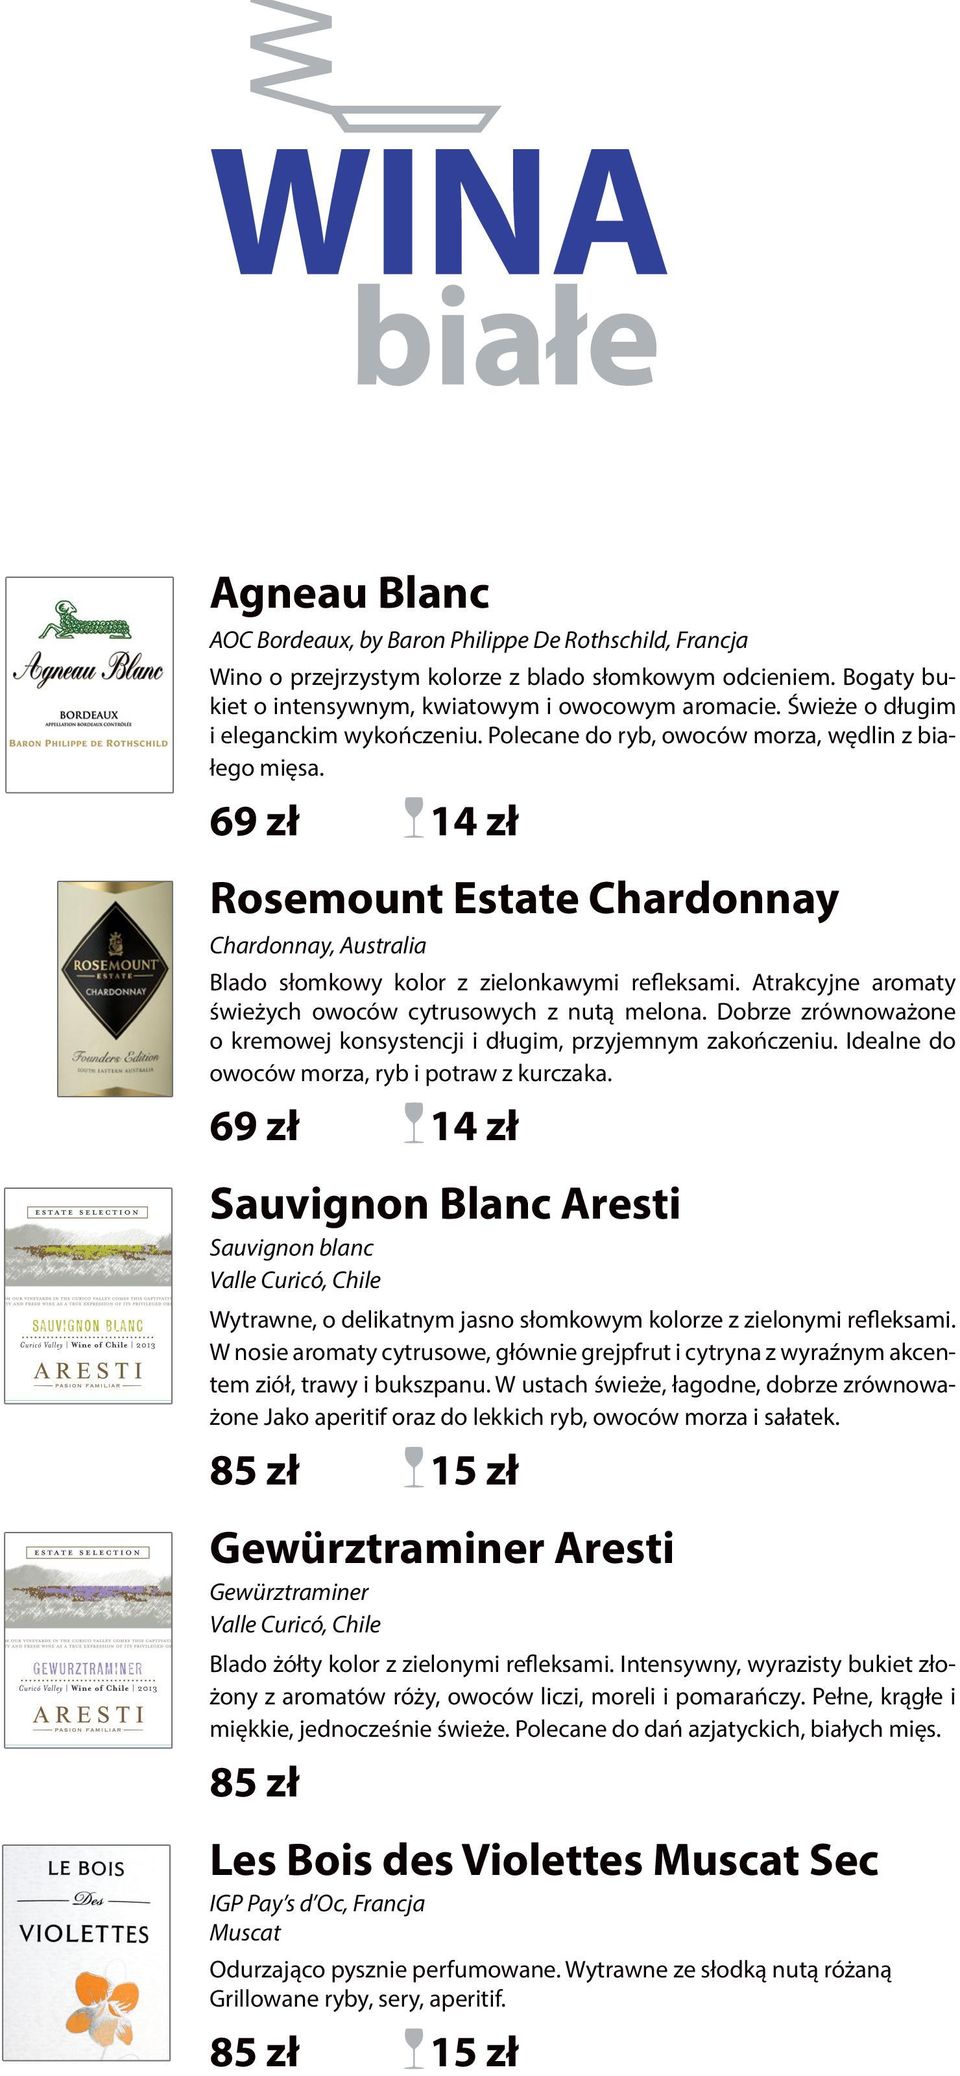 69 zł 14 zł Rosemount Estate Chardonnay Chardonnay, Australia Blado słomkowy kolor z zielonkawymi refleksami. Atrakcyjne aromaty świeżych owoców cytrusowych z nutą melona.